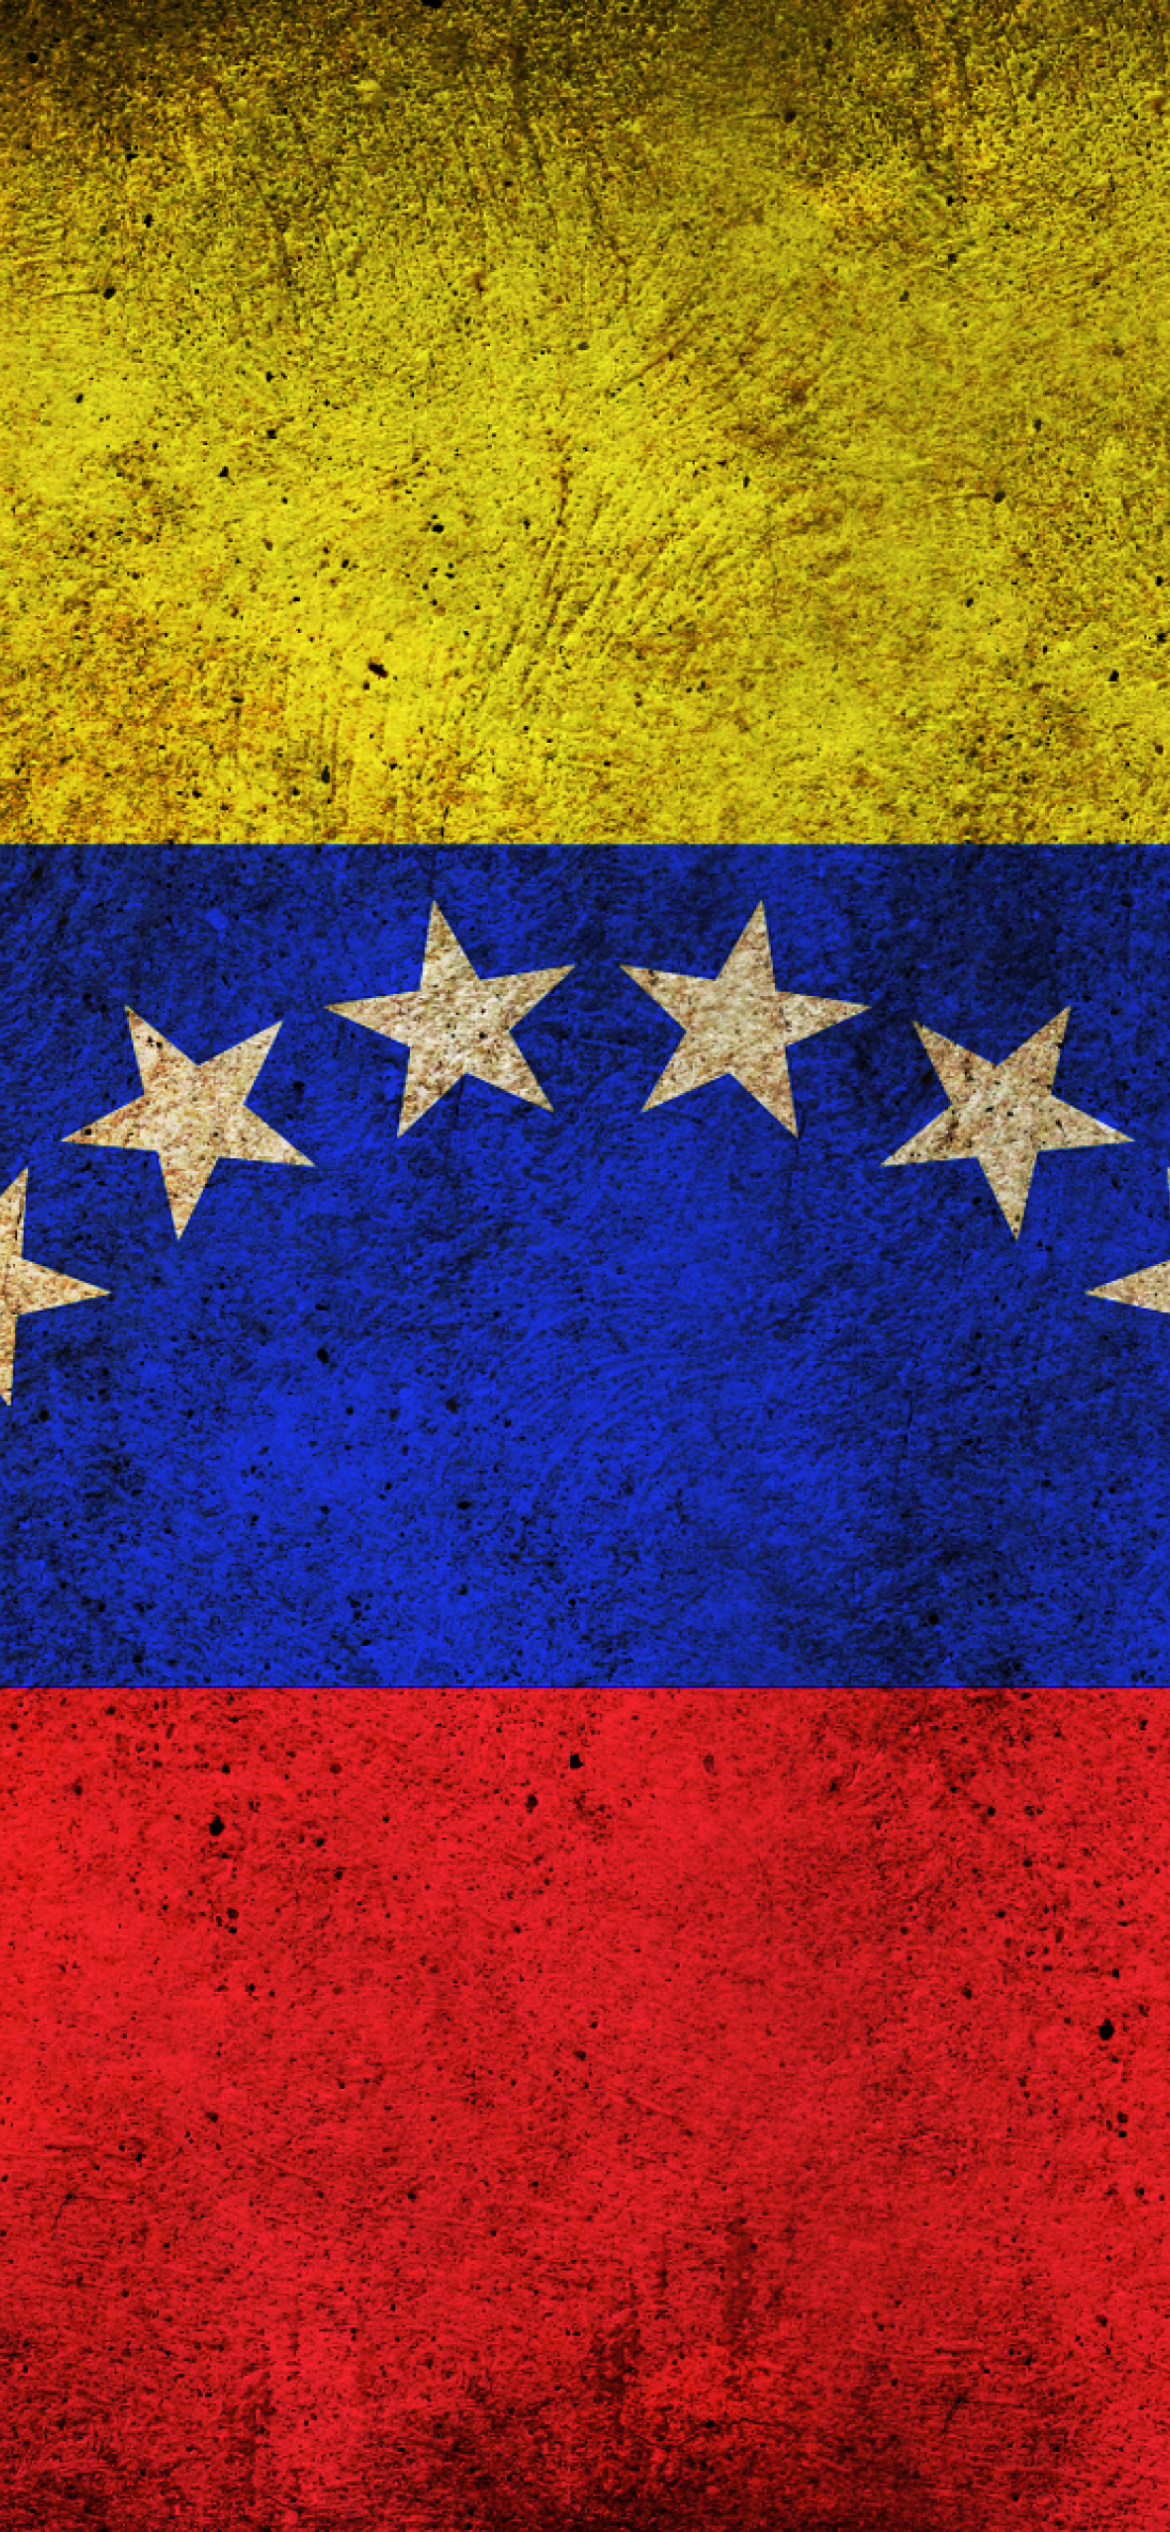 Venezuela Flag screenshot #1 1170x2532